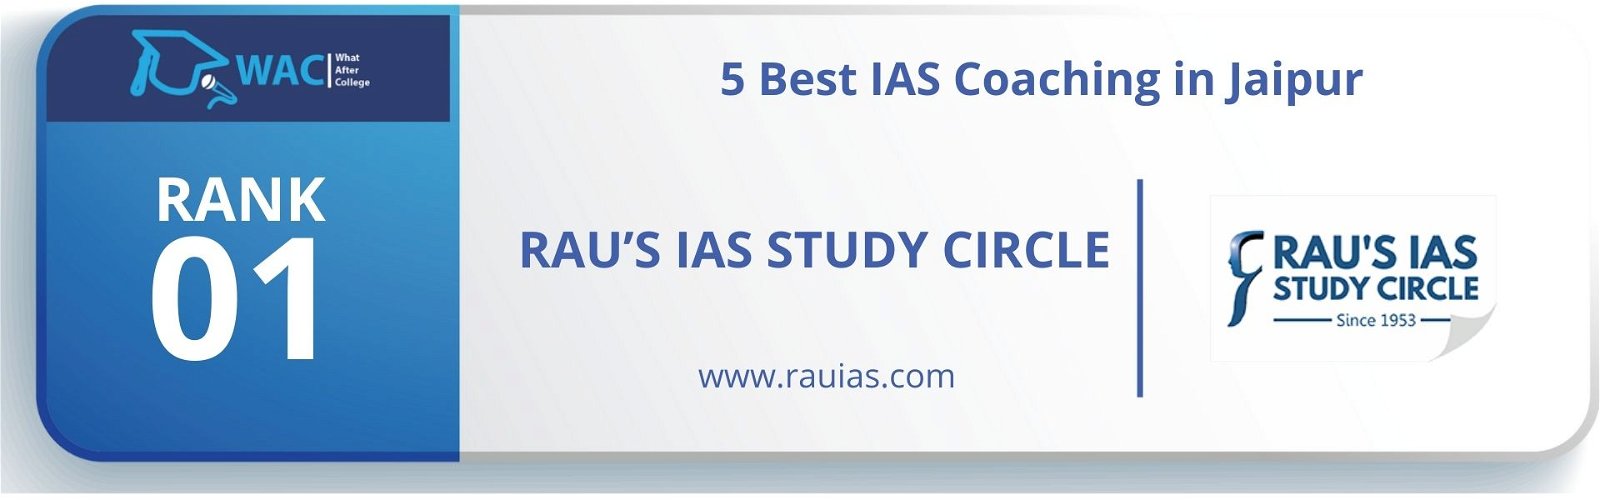 IAS Coaching in Jaipur